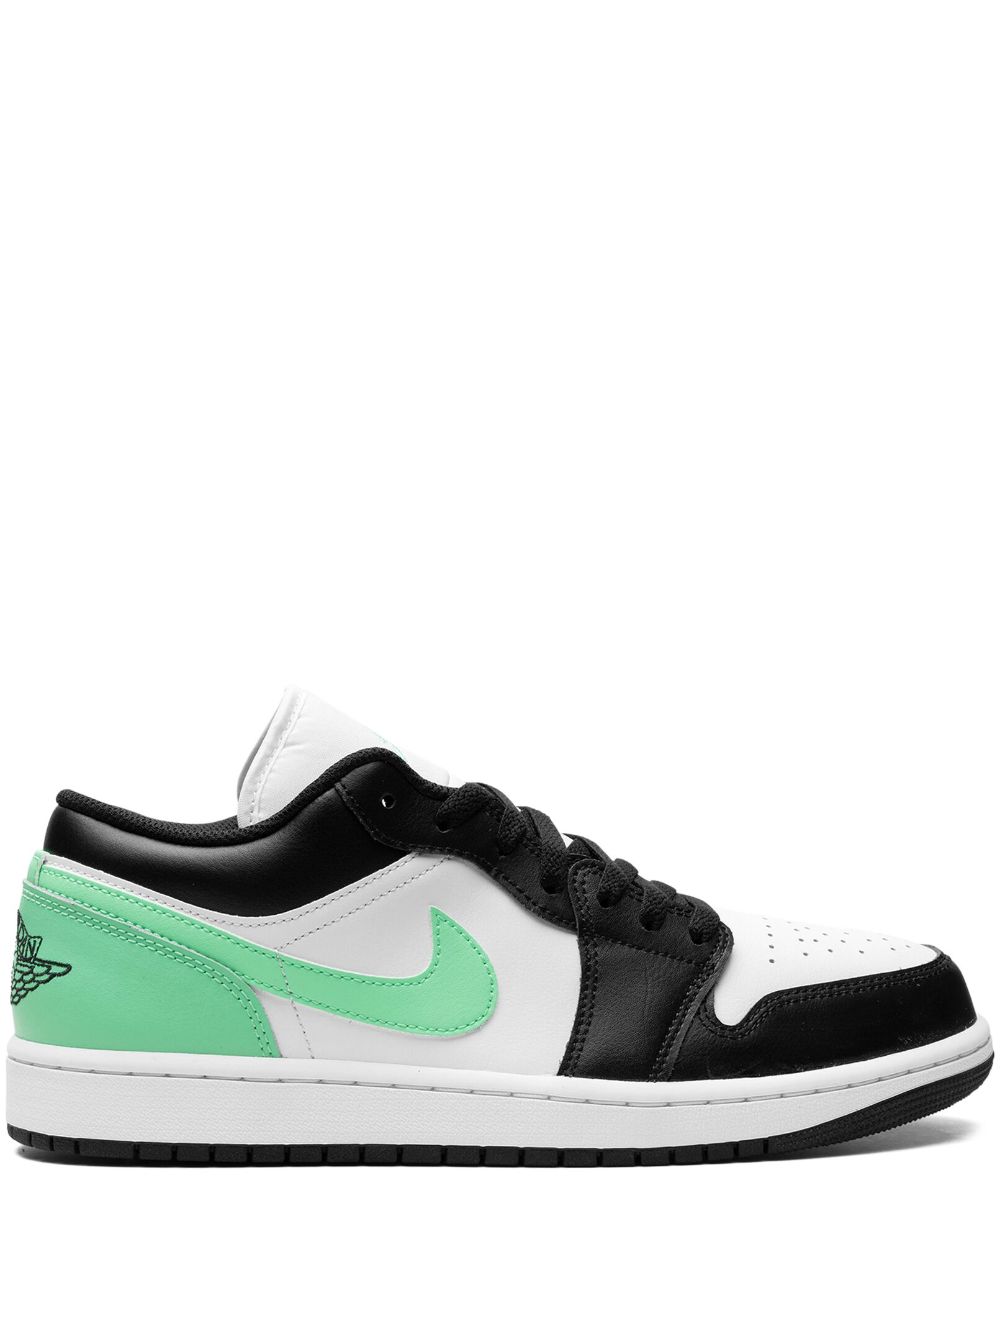 Air Jordan 1 Low "Green Glow" sneakers